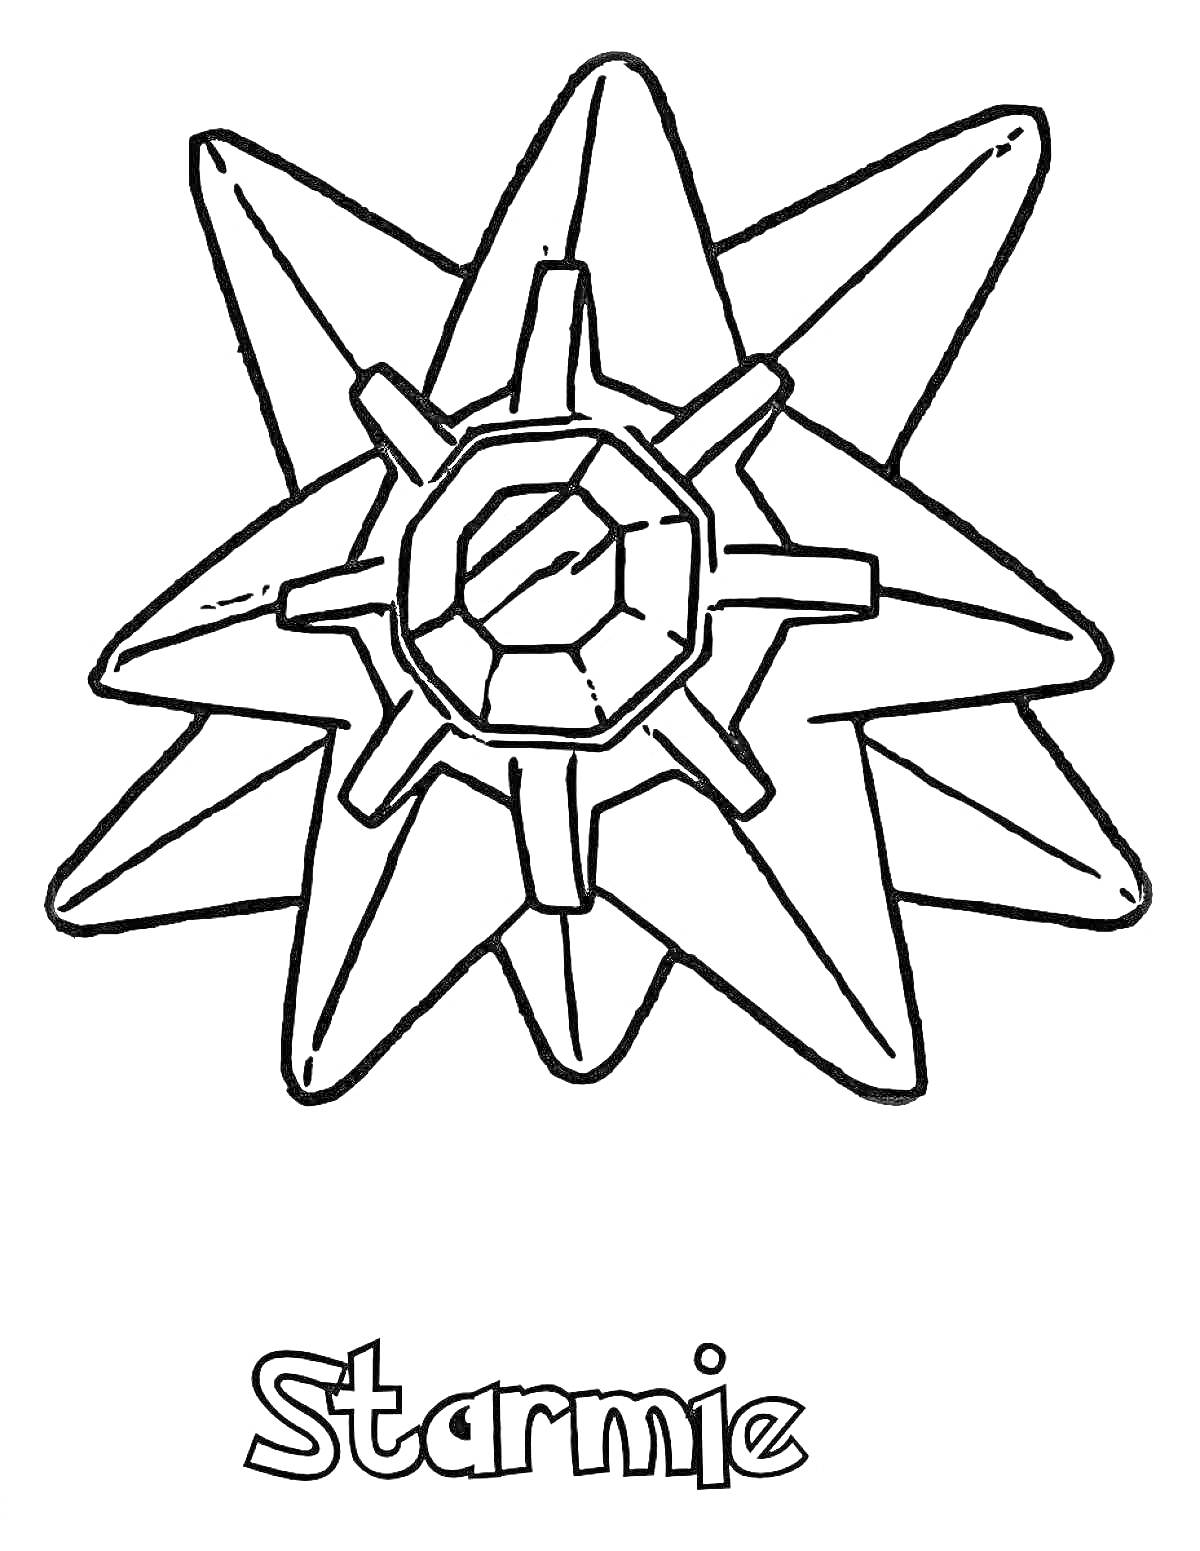 Starmie, изображение покемона Starmie с именем покемона внизу